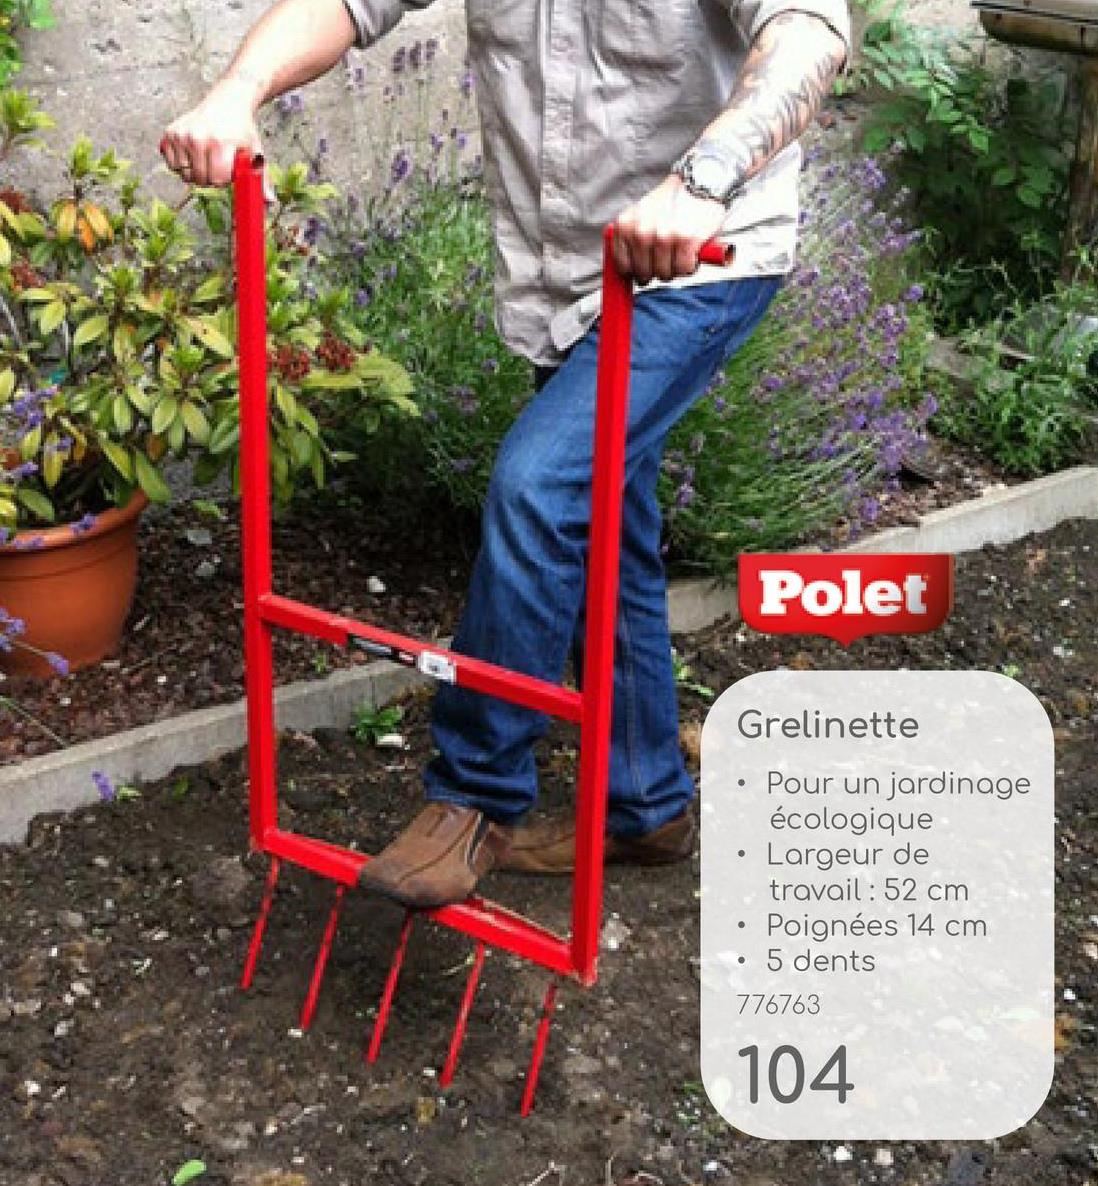 Polet
Grelinette
•
Pour un jardinage
écologique
Largeur de
travail : 52 cm
Poignées 14 cm
5 dents
776763
104